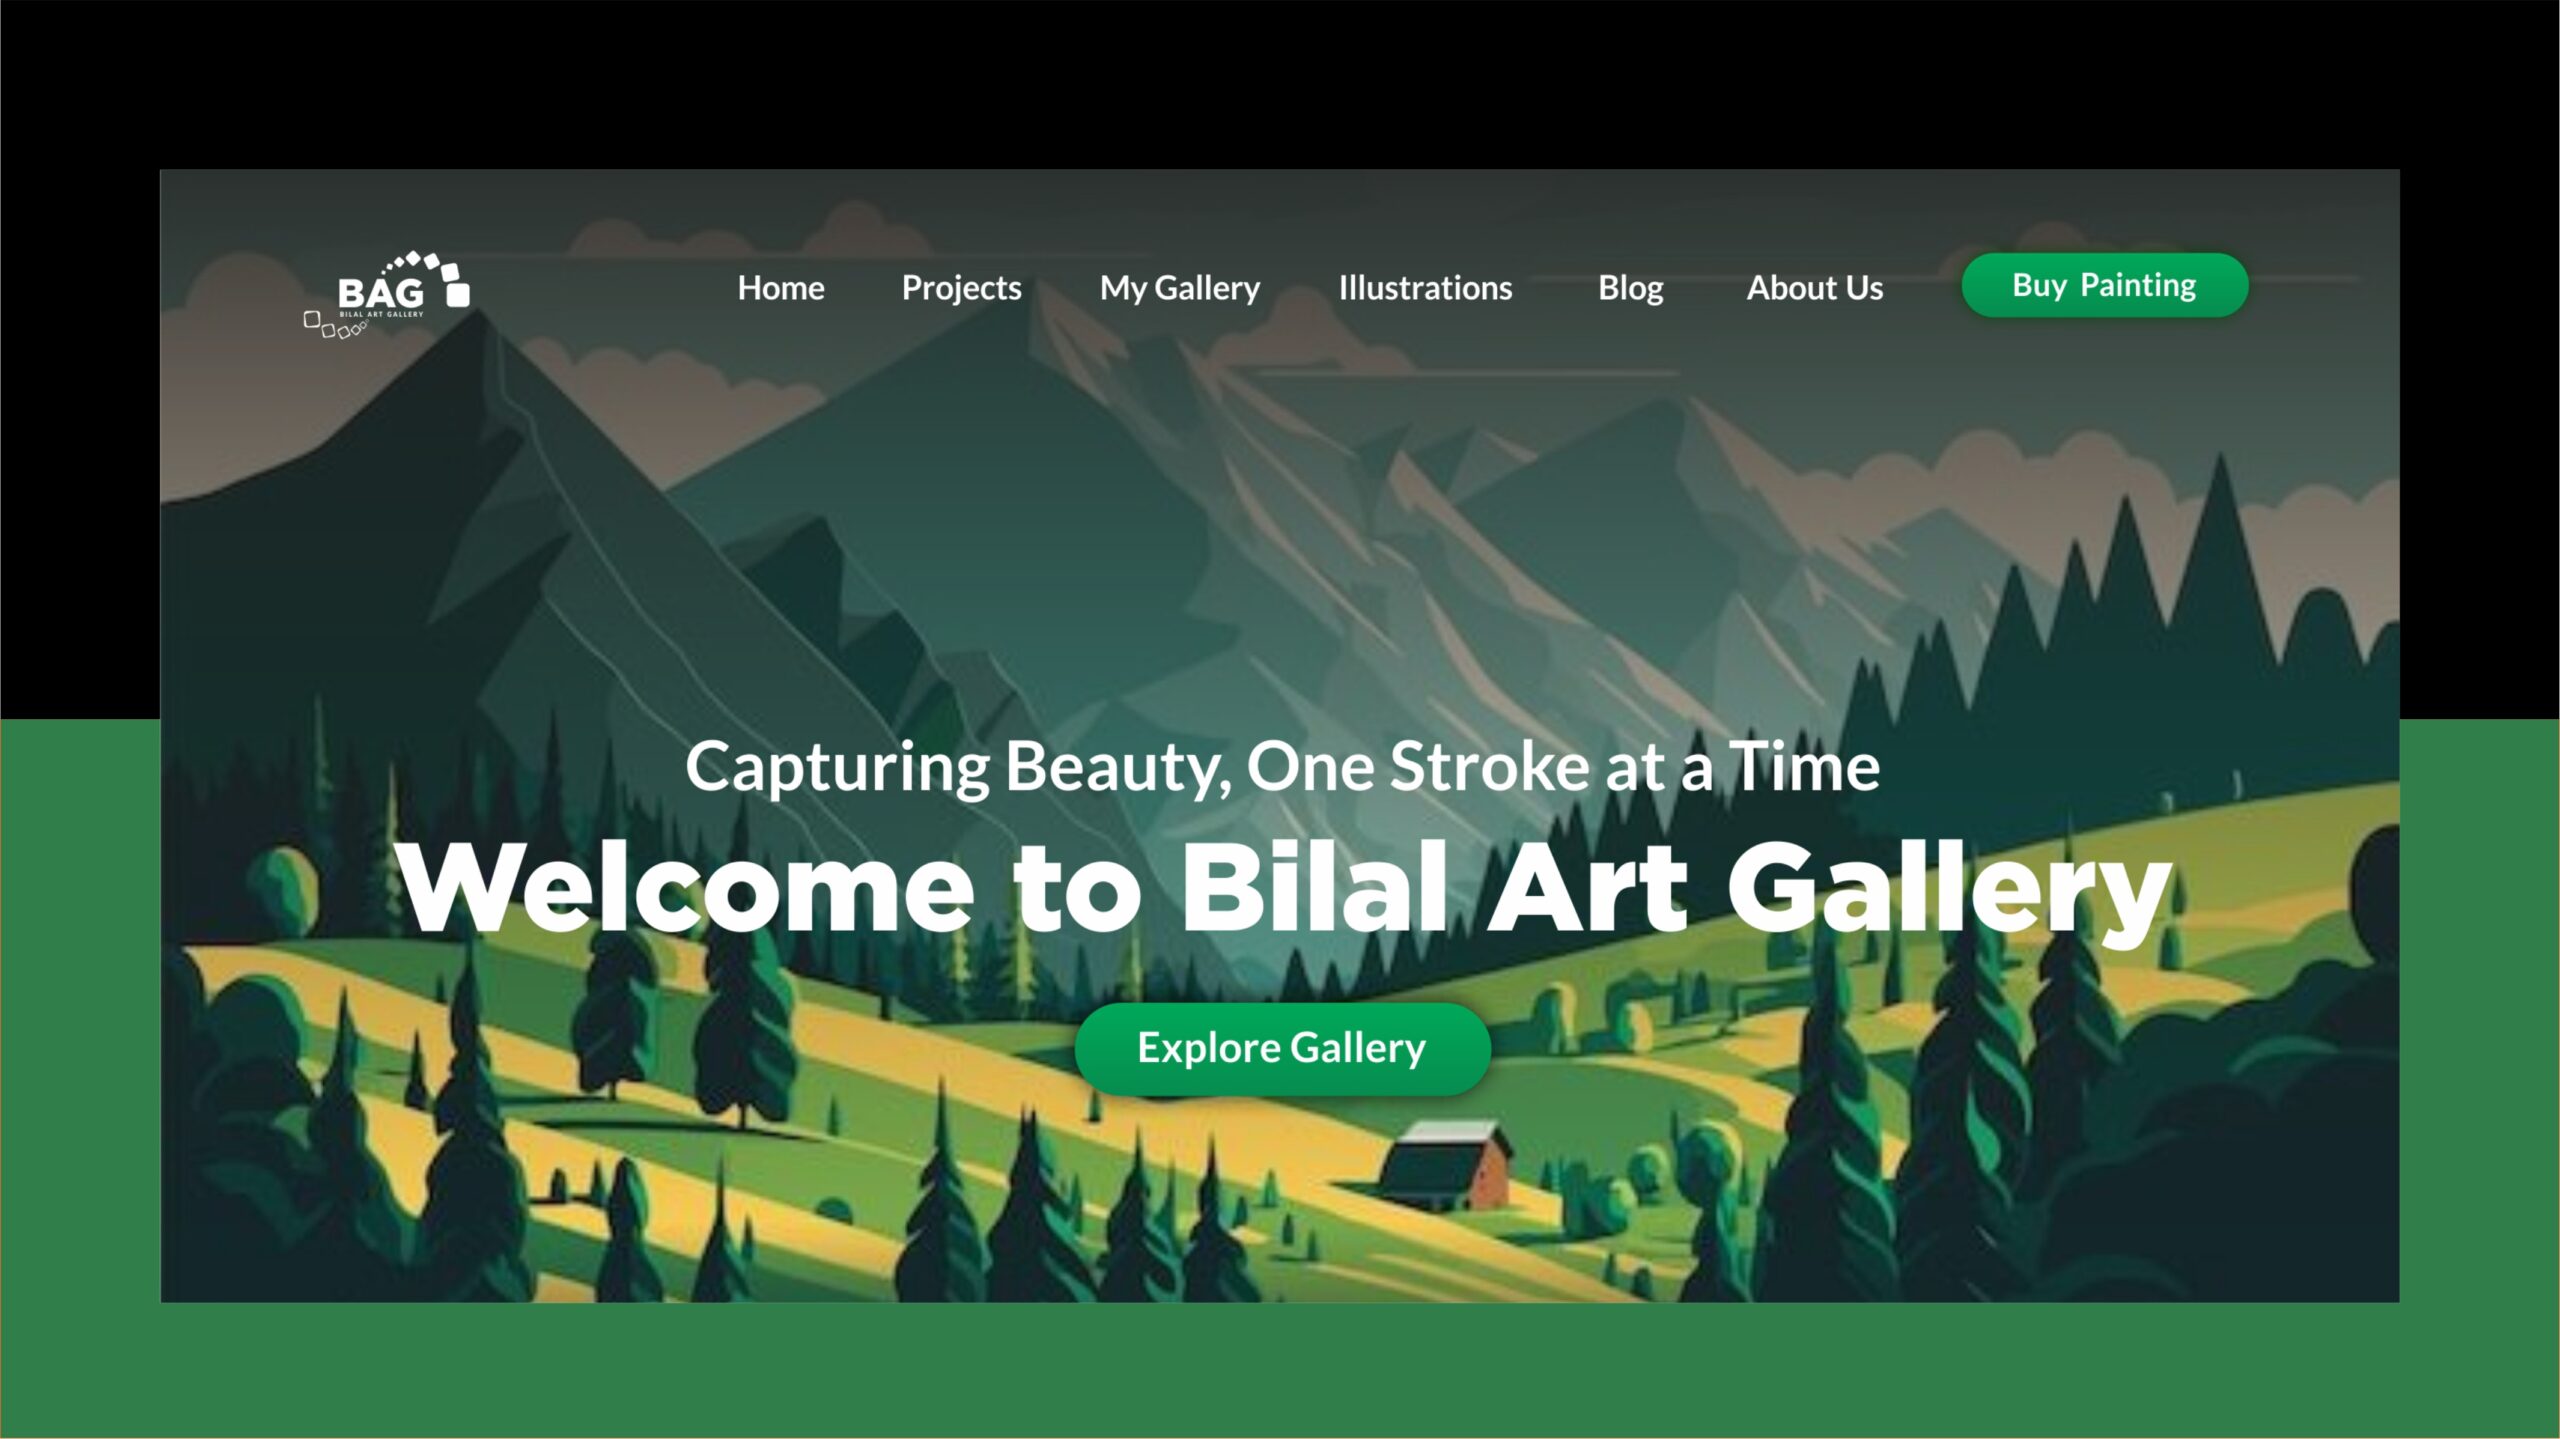 Bilal Art Gallery